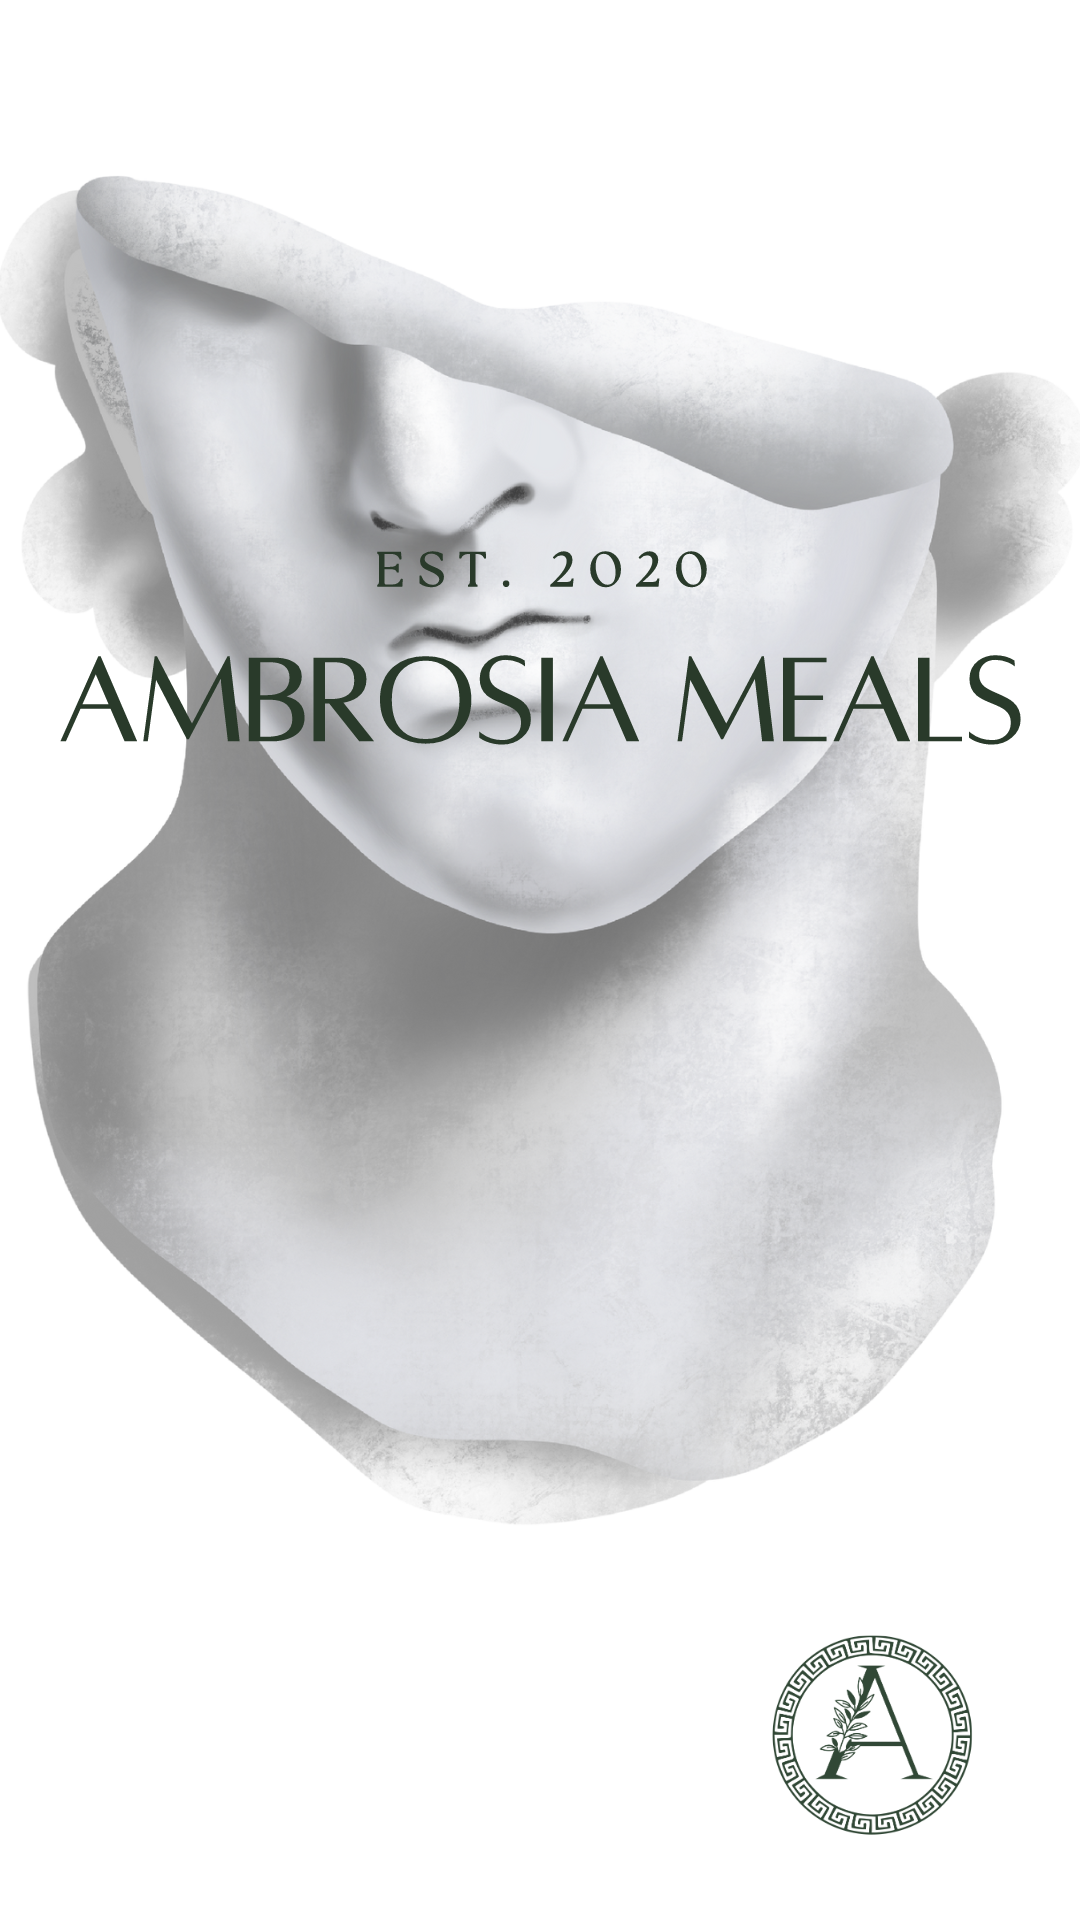 Ambrosia Meals